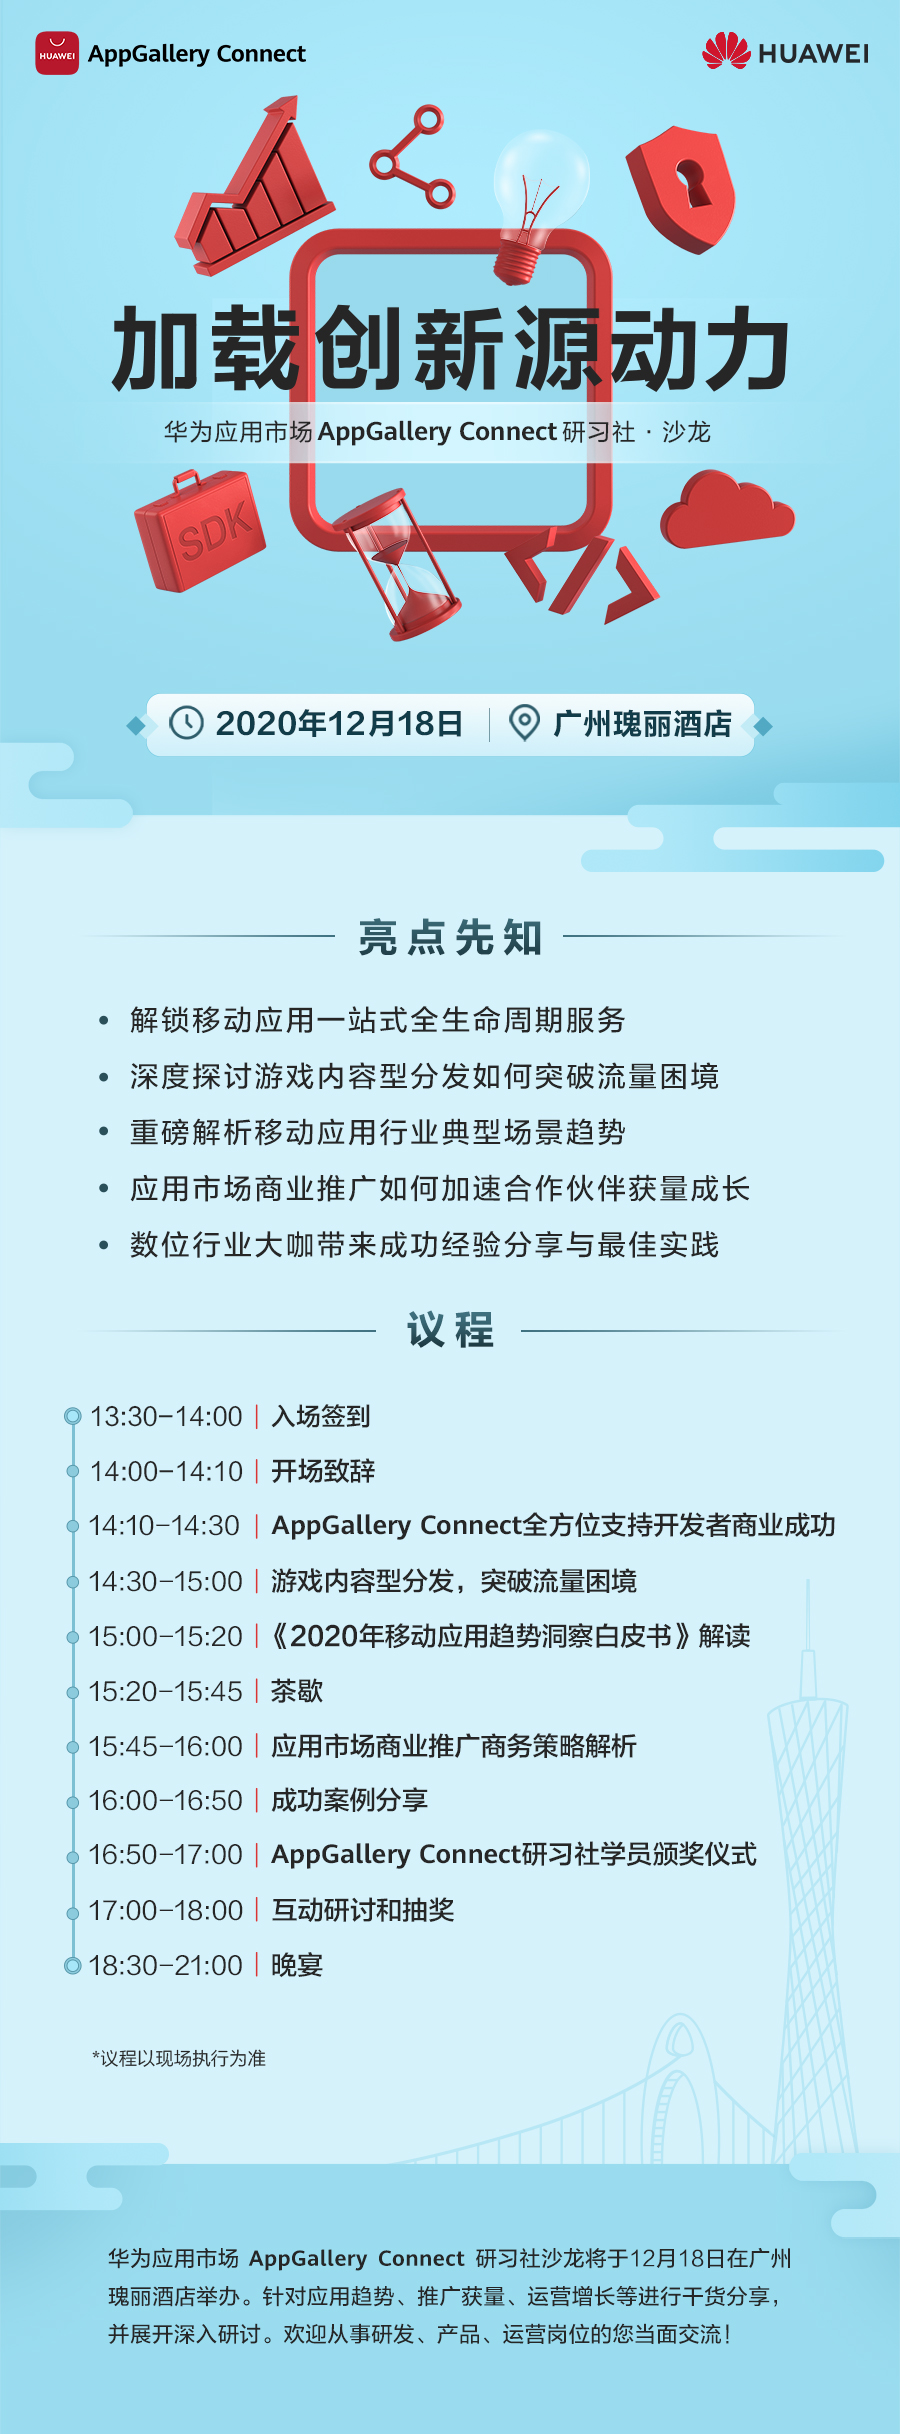 华为应用市场AppGallery Connect研习社&#183;沙龙广州站即将举办